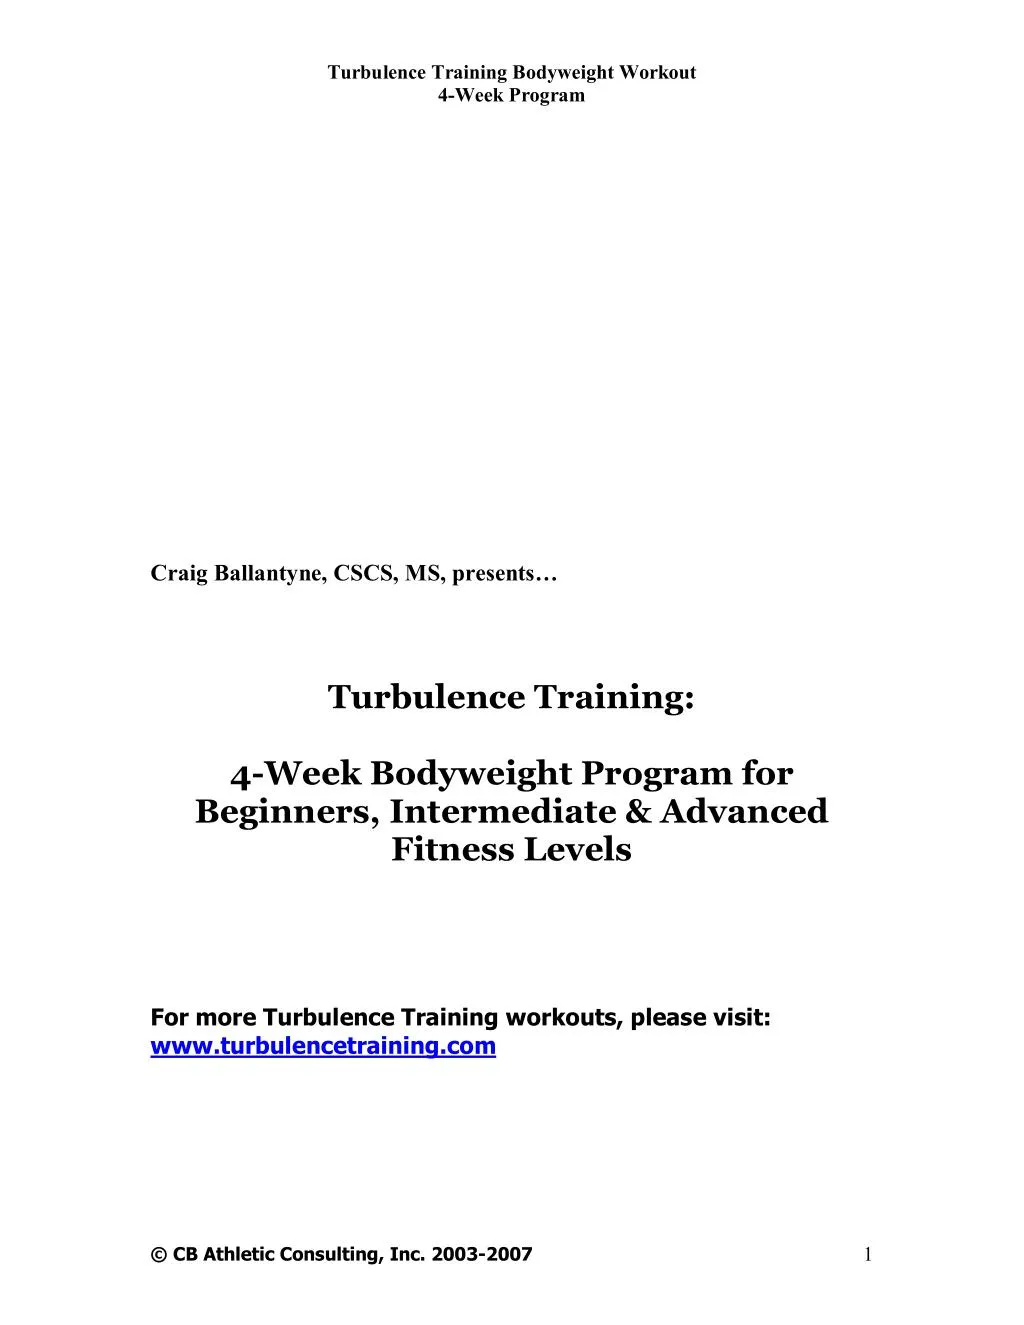 turbulence training bodyweight workout 4 week